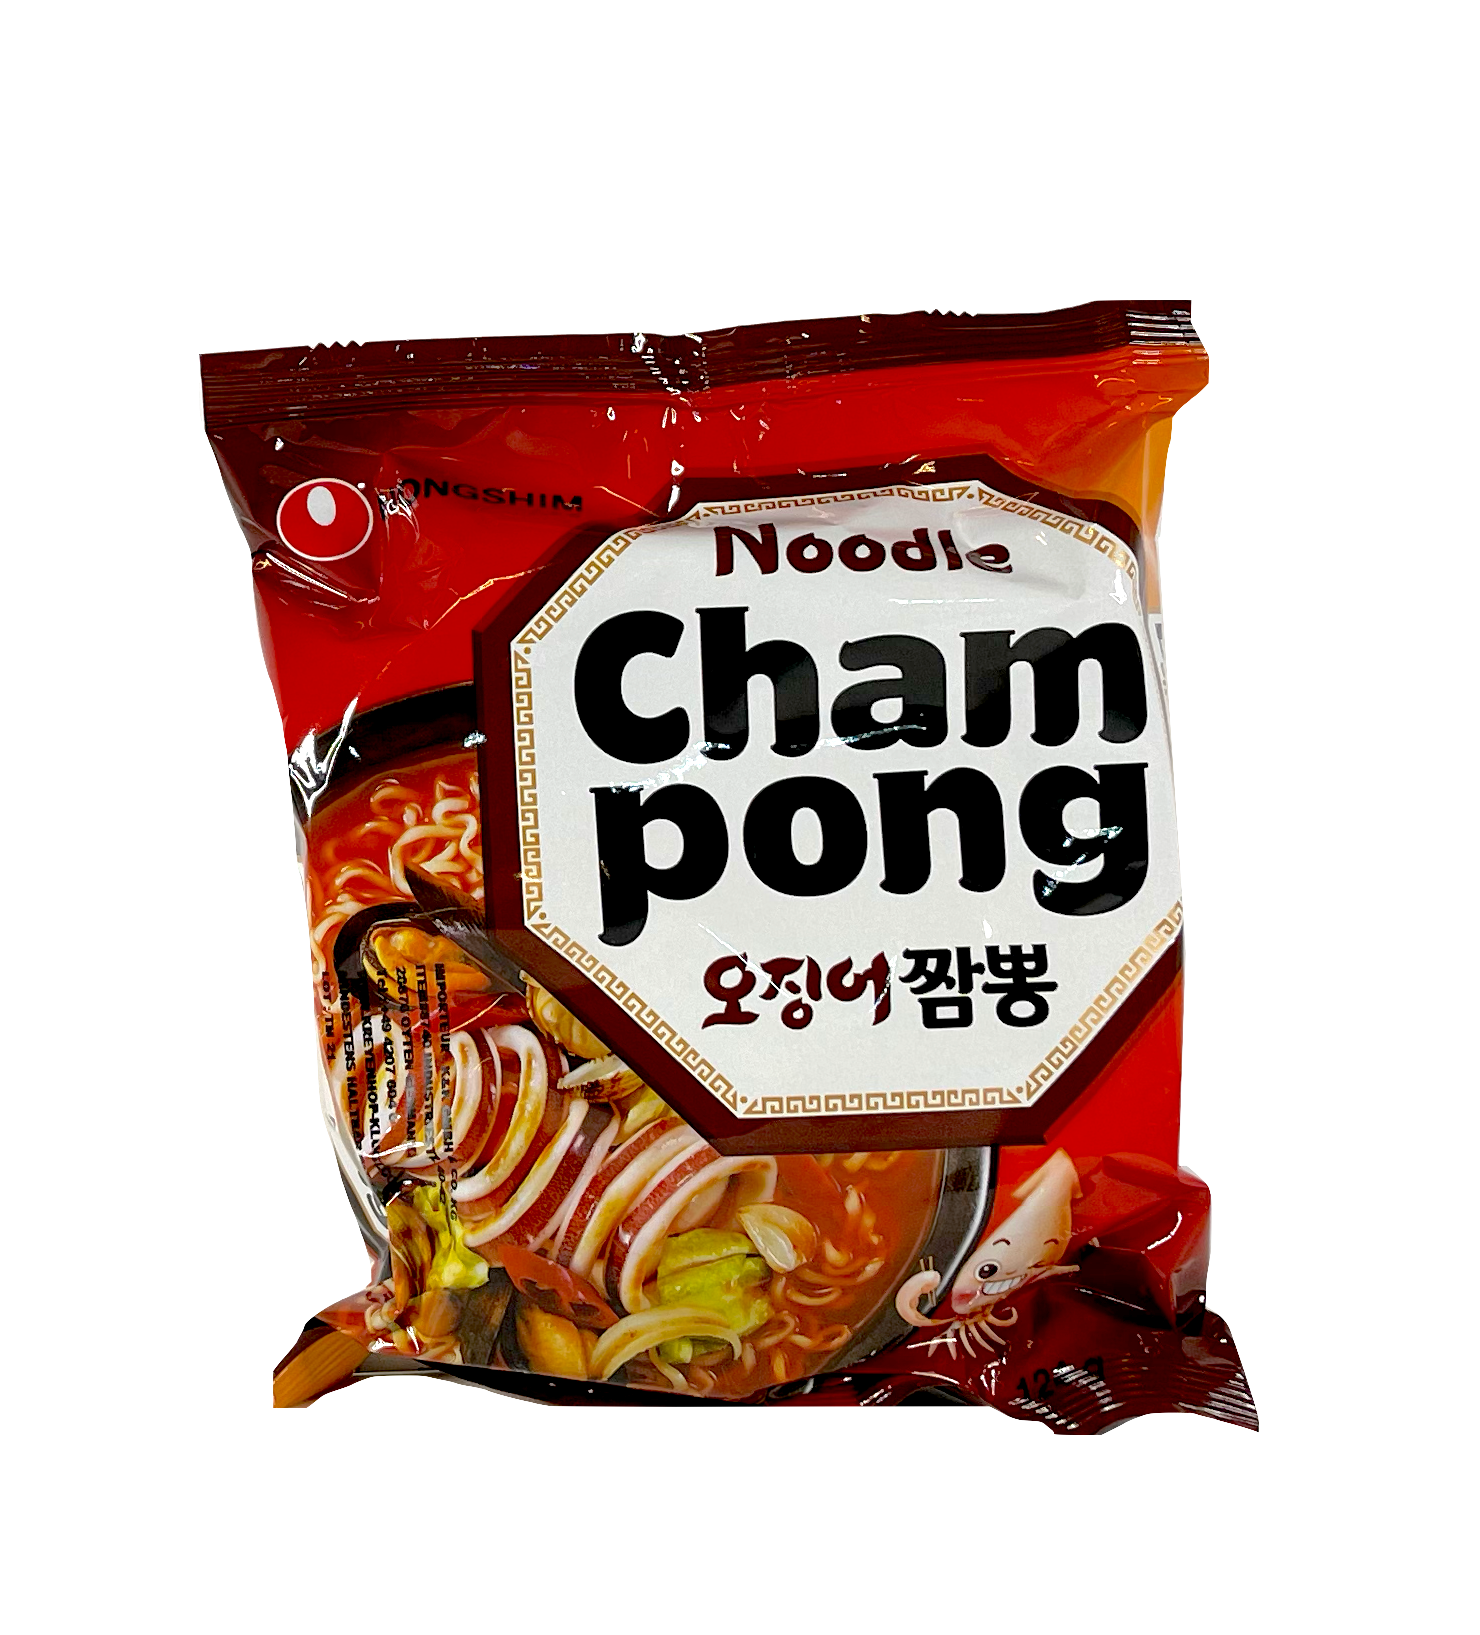 方便面 Cham Pong 海鲜风味 124g 农心 韩国